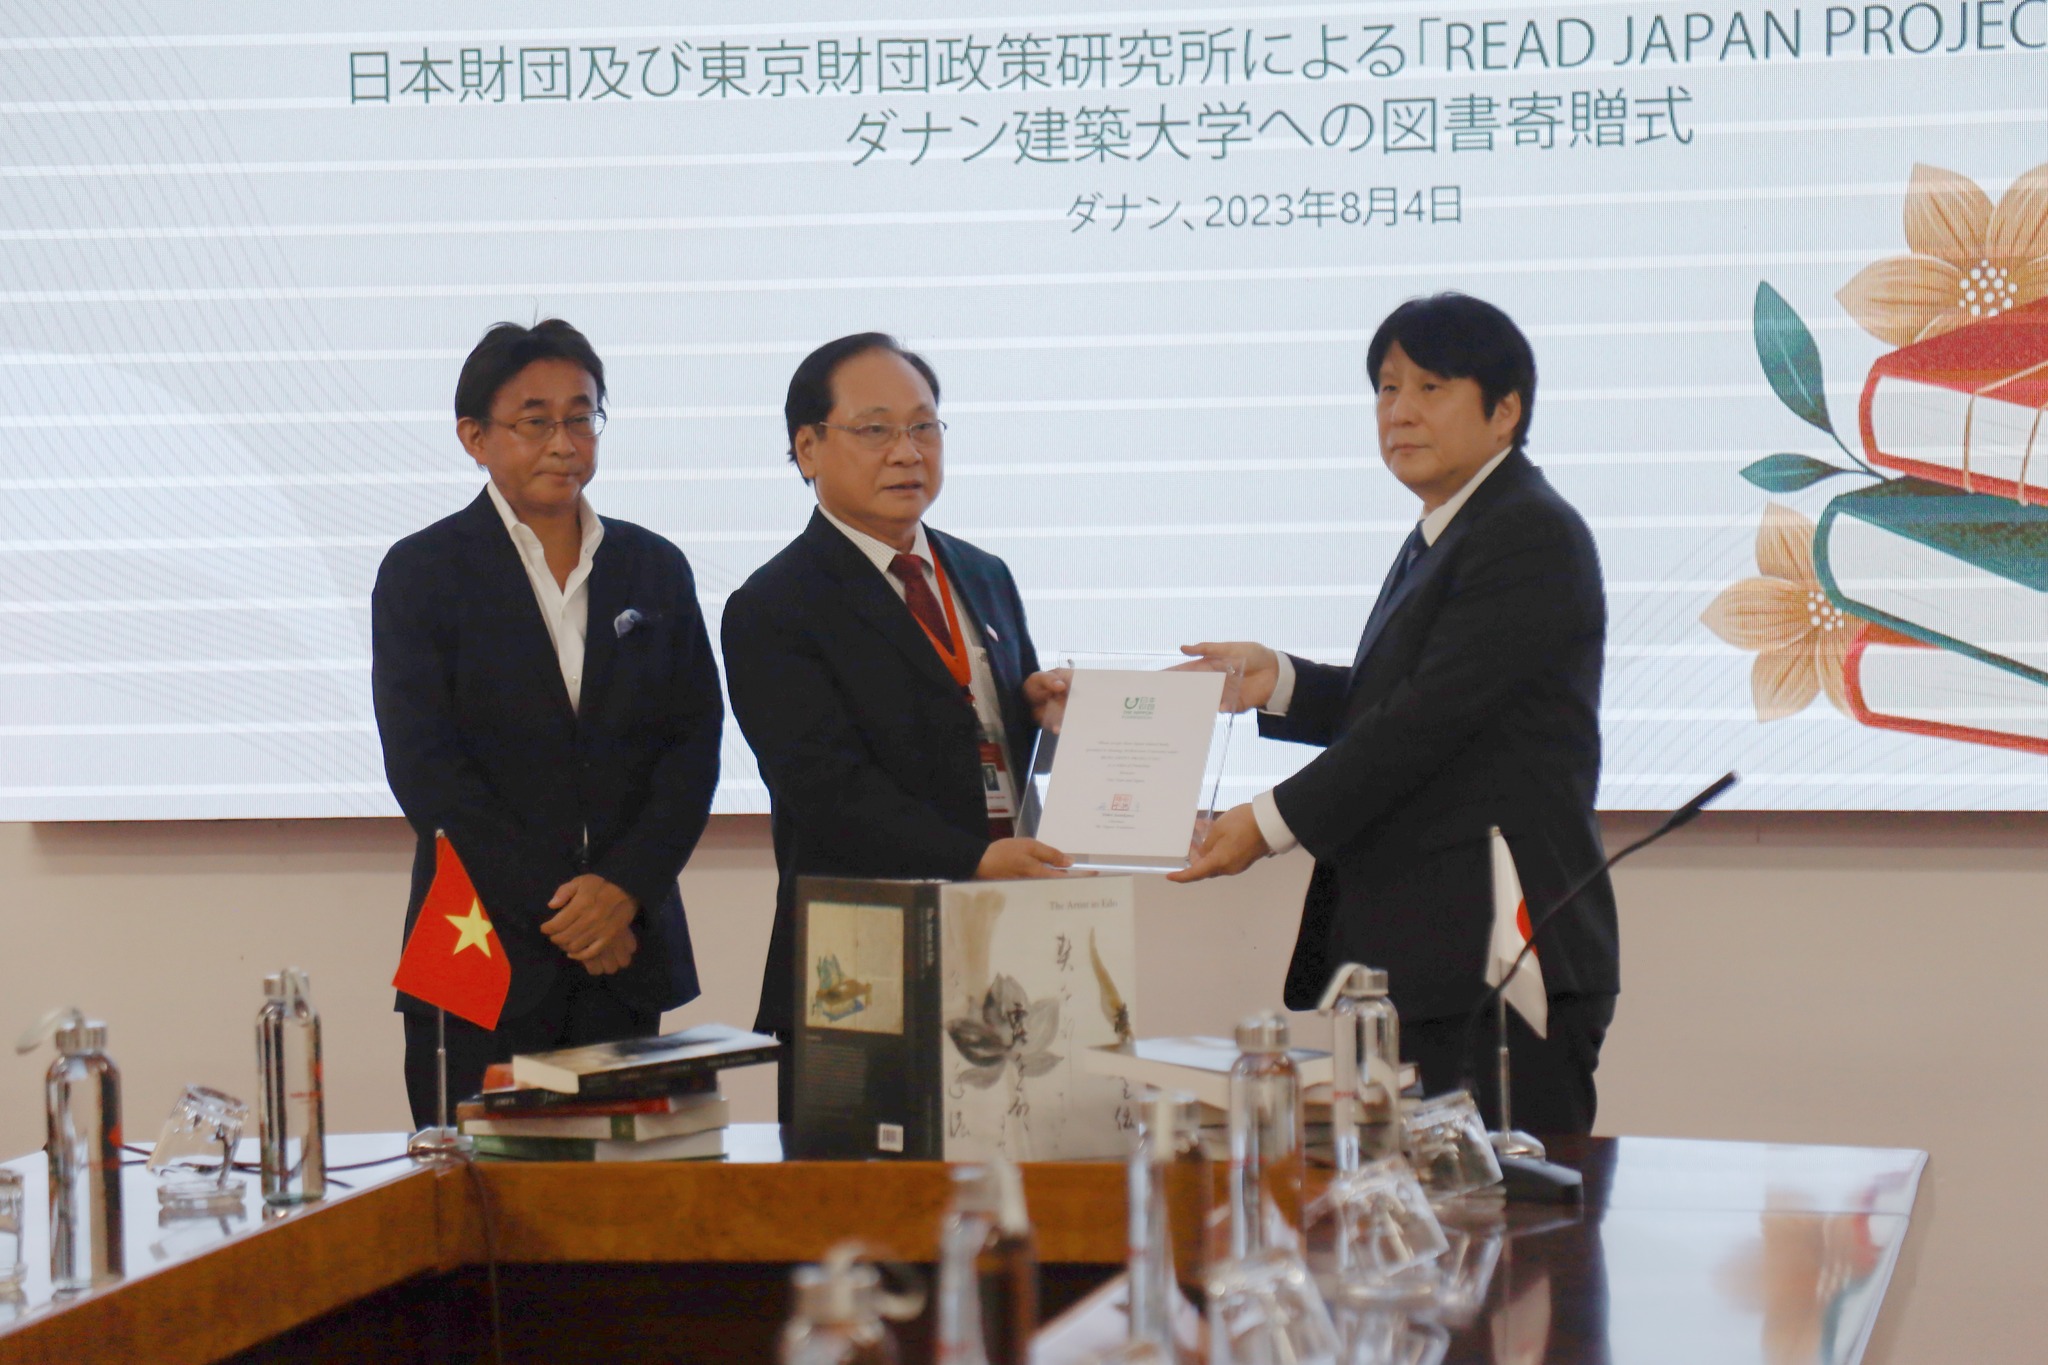 Lễ trao tặng sách do The Nippon Foundation và quỹ nghiên cứu chính sách Tokyo tài trợ trong khuôn khổ dự án Read Japan Project 